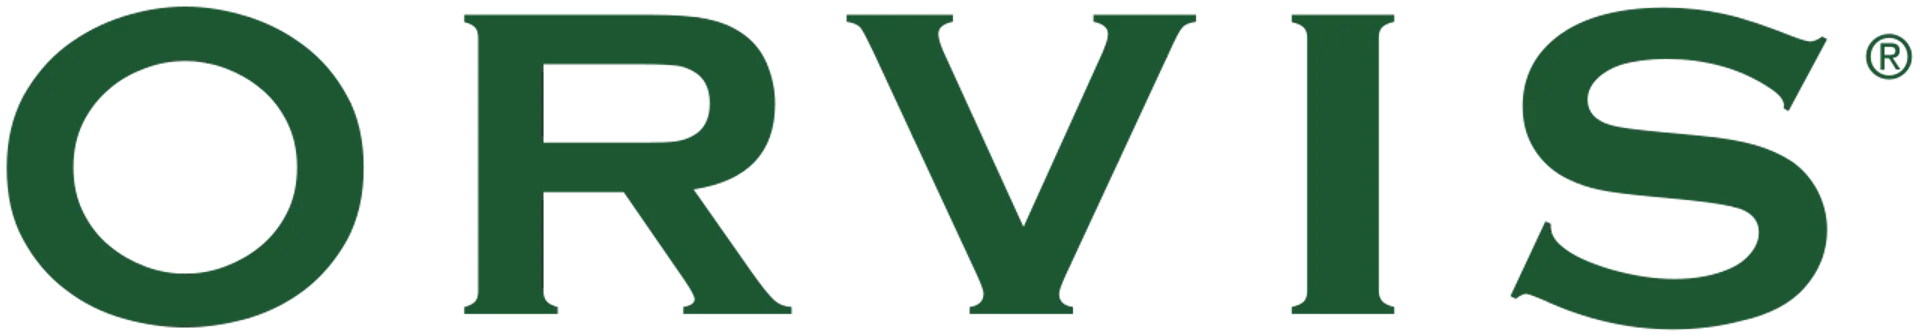 ORVIS logo